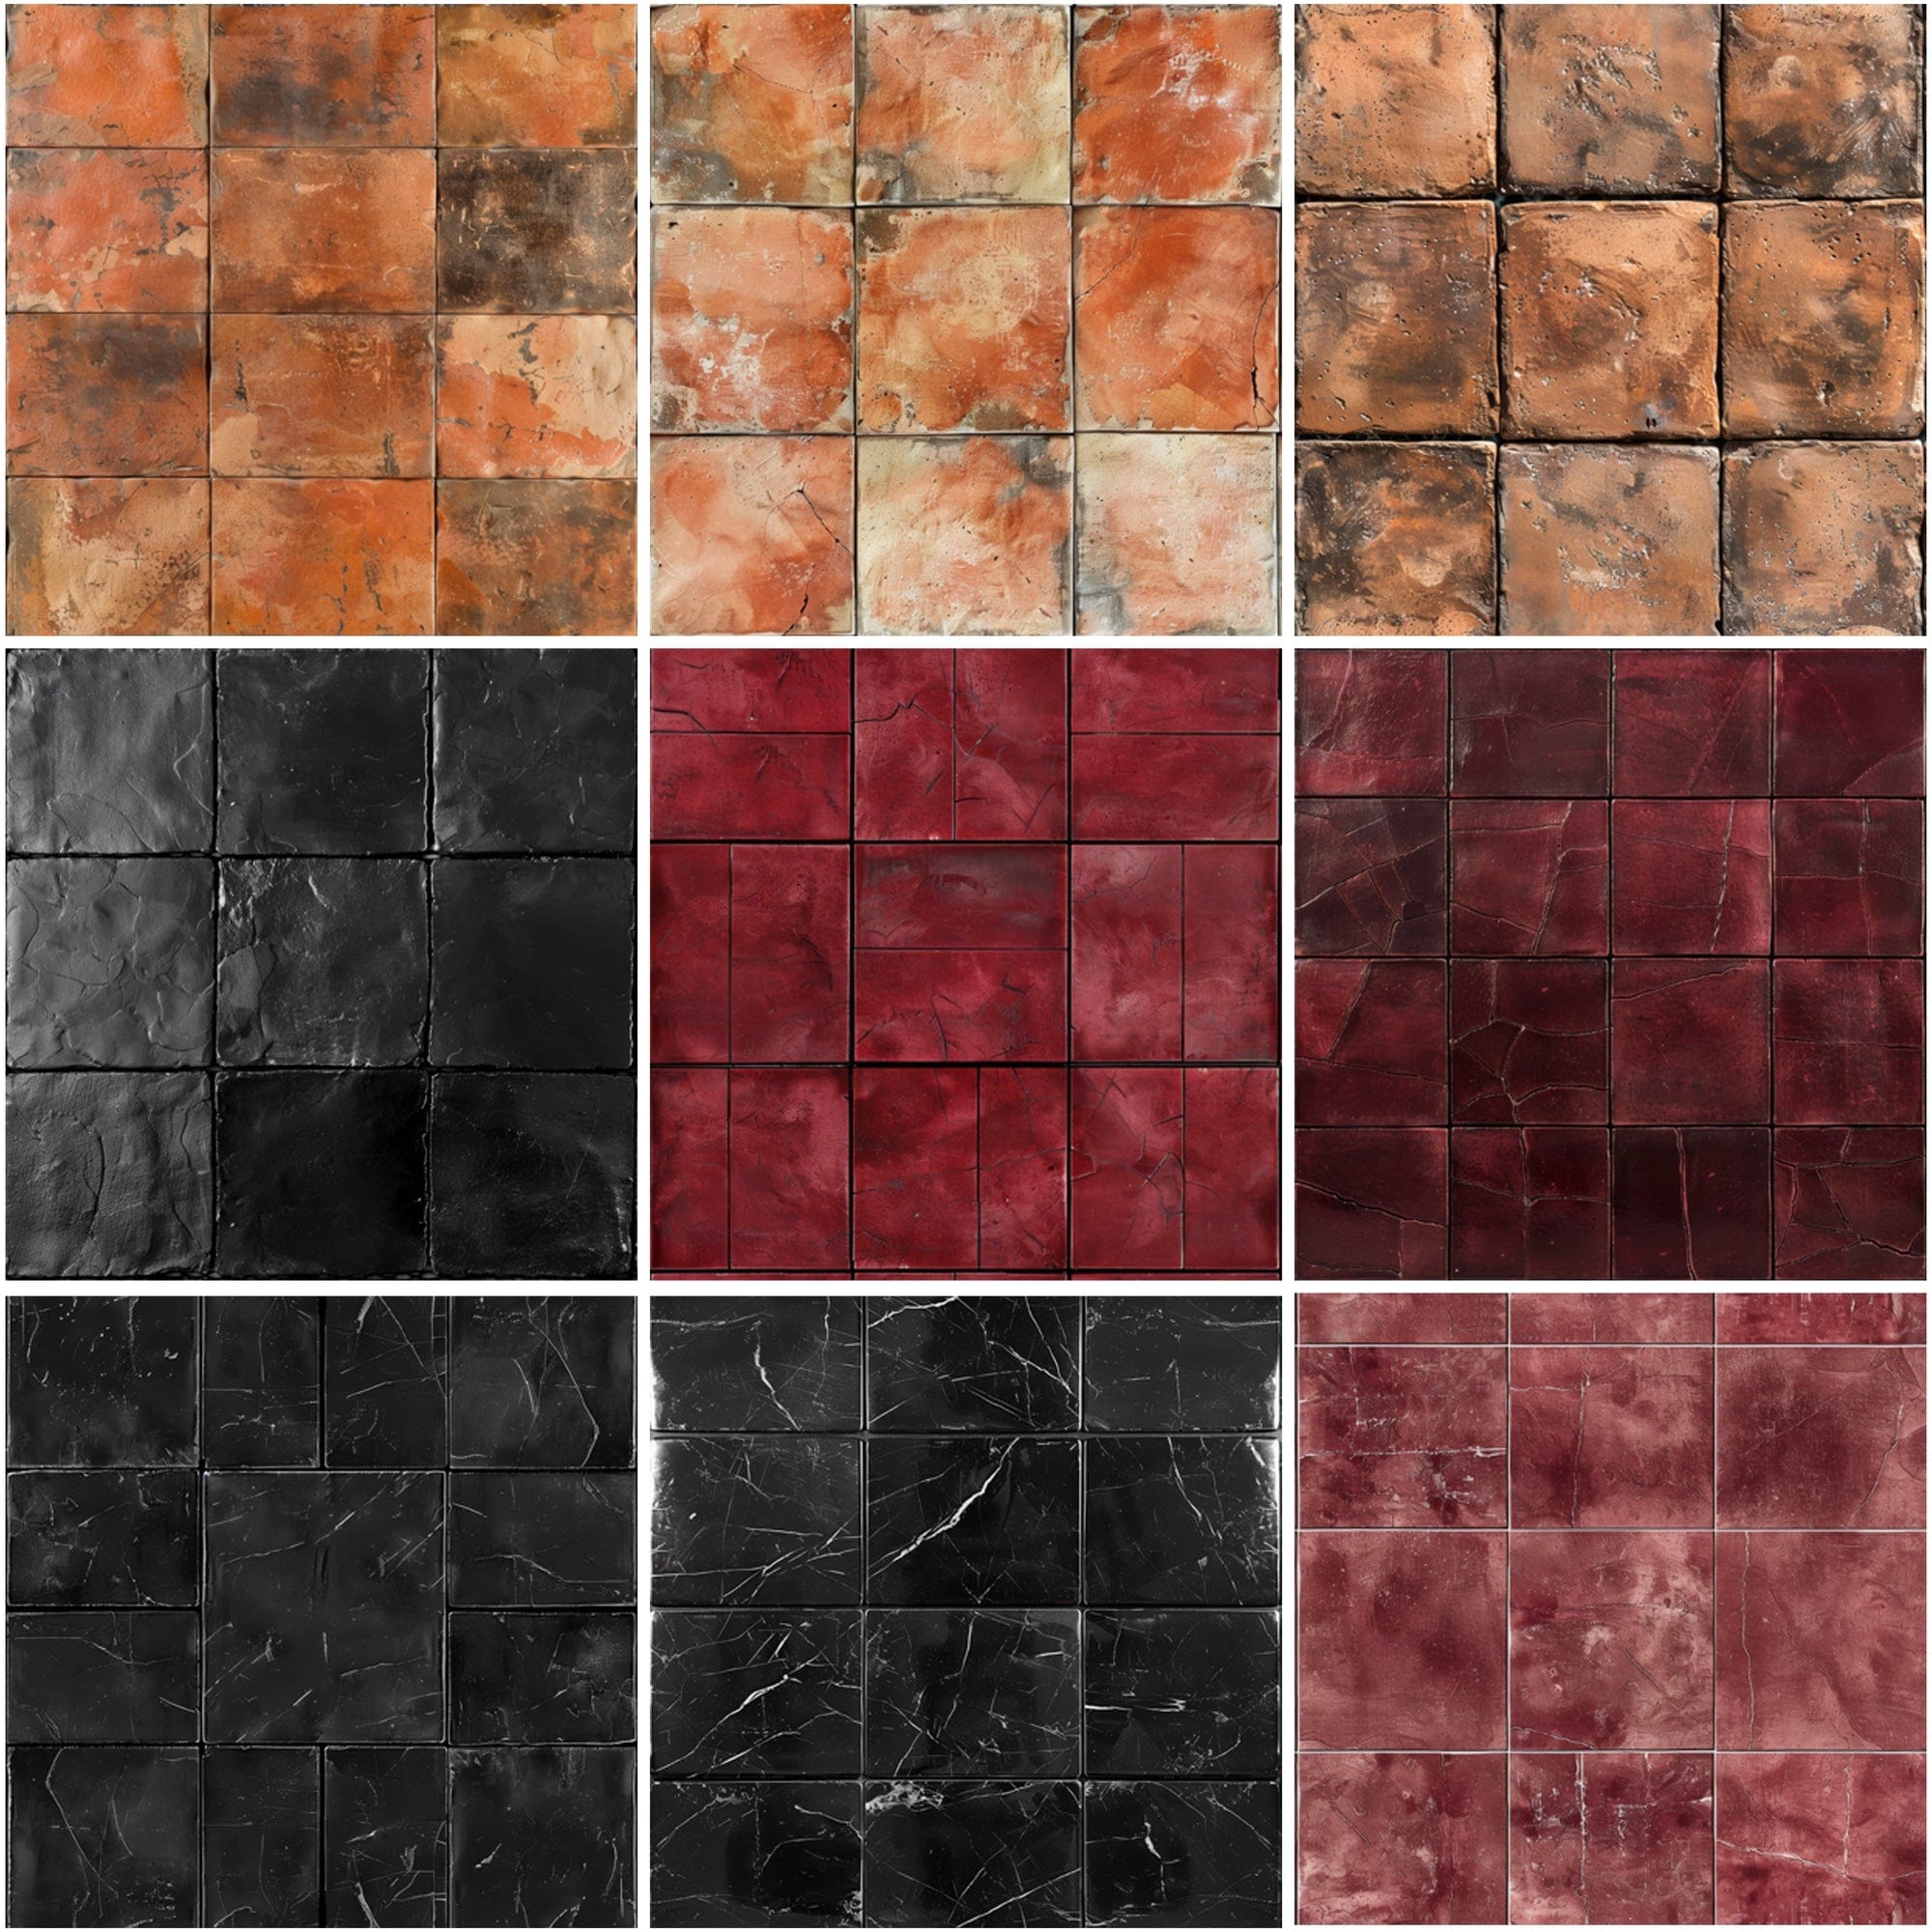 330 Ceramic Tile Seamless Patterns Bundle - High-Resolution JPG, Photoshop PAT - Commercial License Included Digital Download Sumobundle